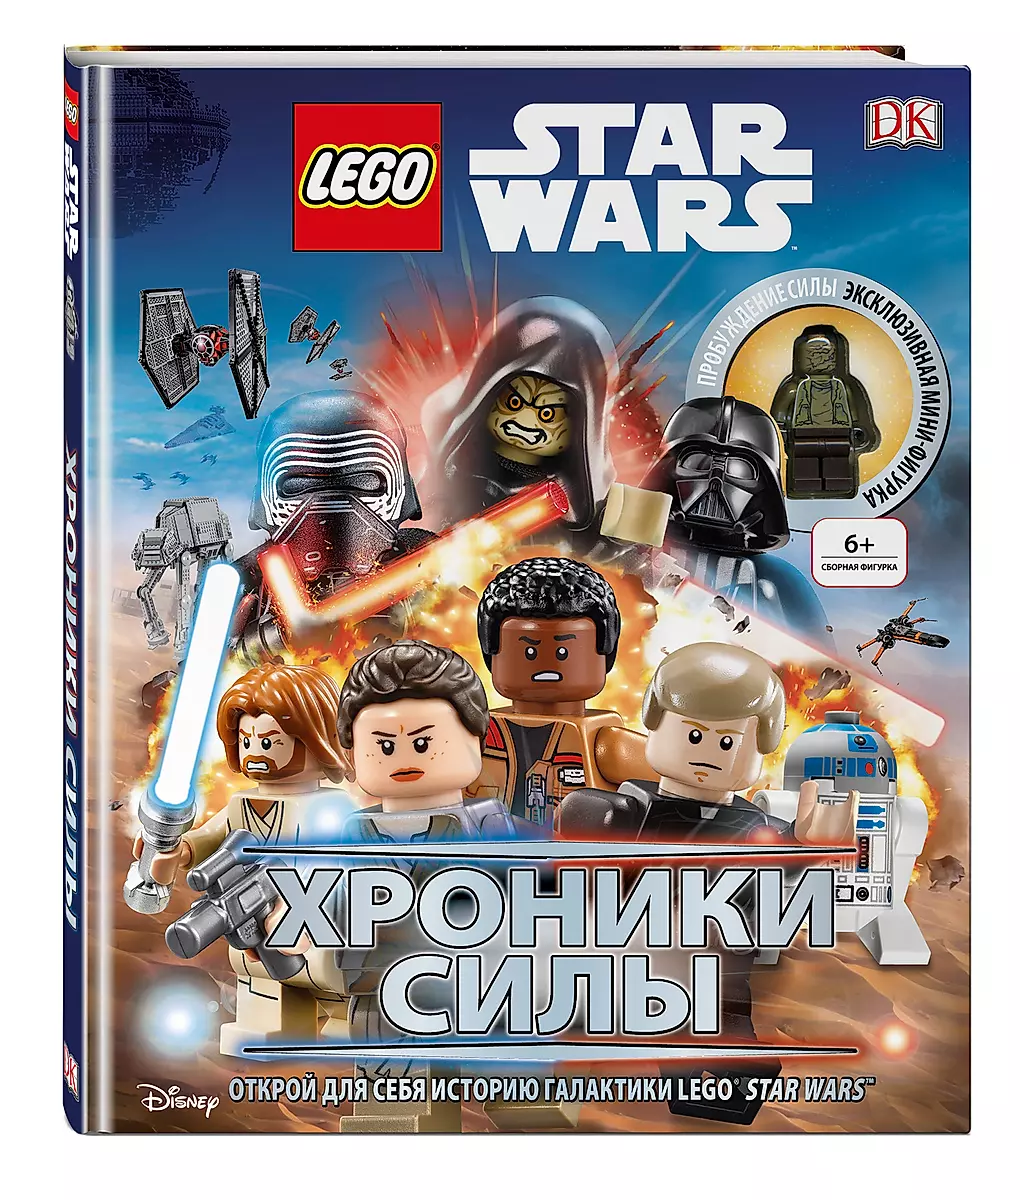 LEGO Звездные Войны: Скайуокер Сага (Русская версия)(Xbox One/Series X)